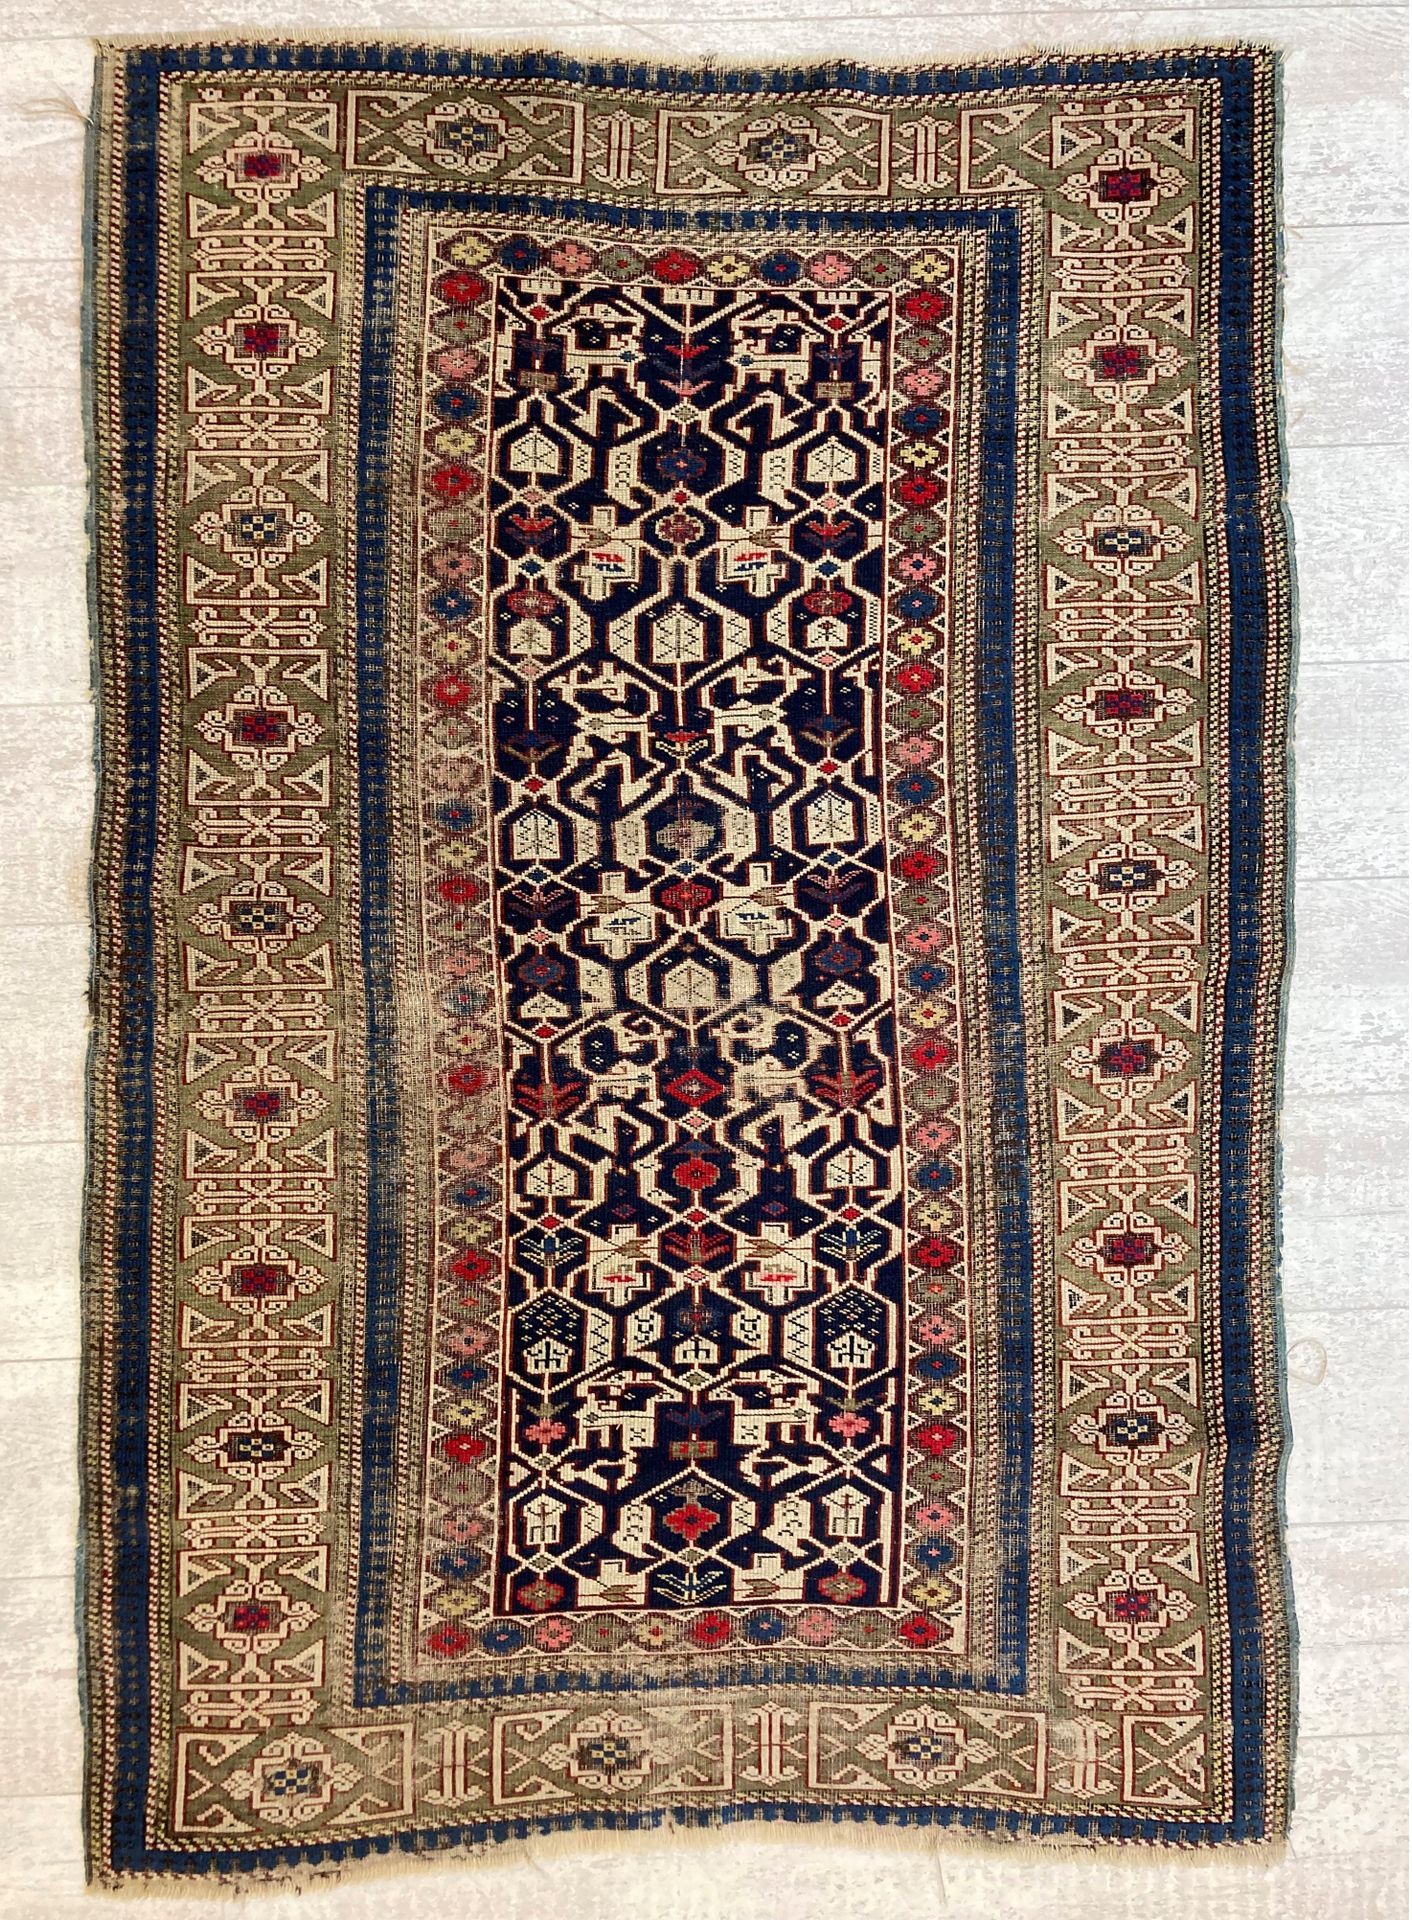 Null 哈萨克羊毛地毯，米色背景上有风格化的花卉装饰，绿色背景上有缠结图案的宽边。160 x 105厘米。(穿着)